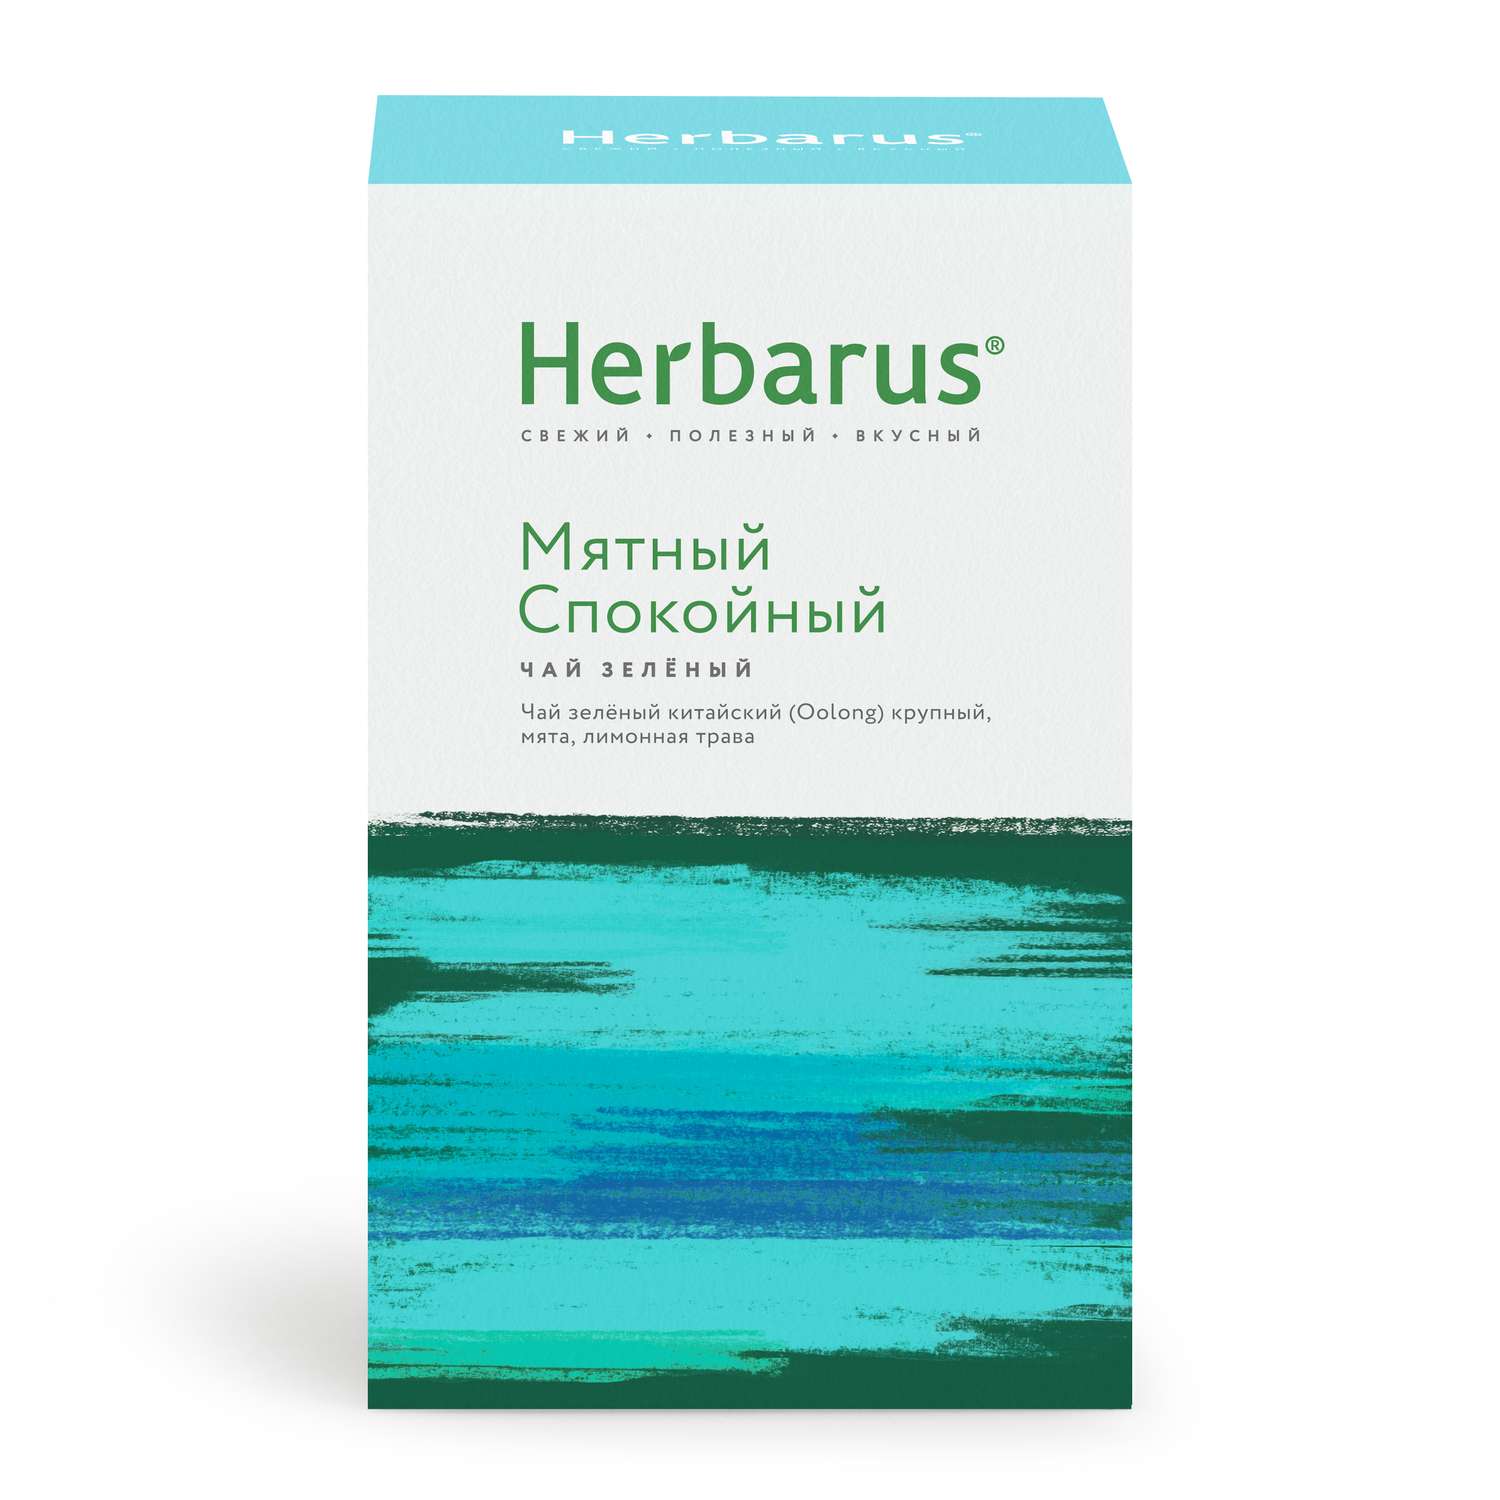 Зеленый чай с добавками Herbarus Мятный спокойный листовой 75 г. - фото 4